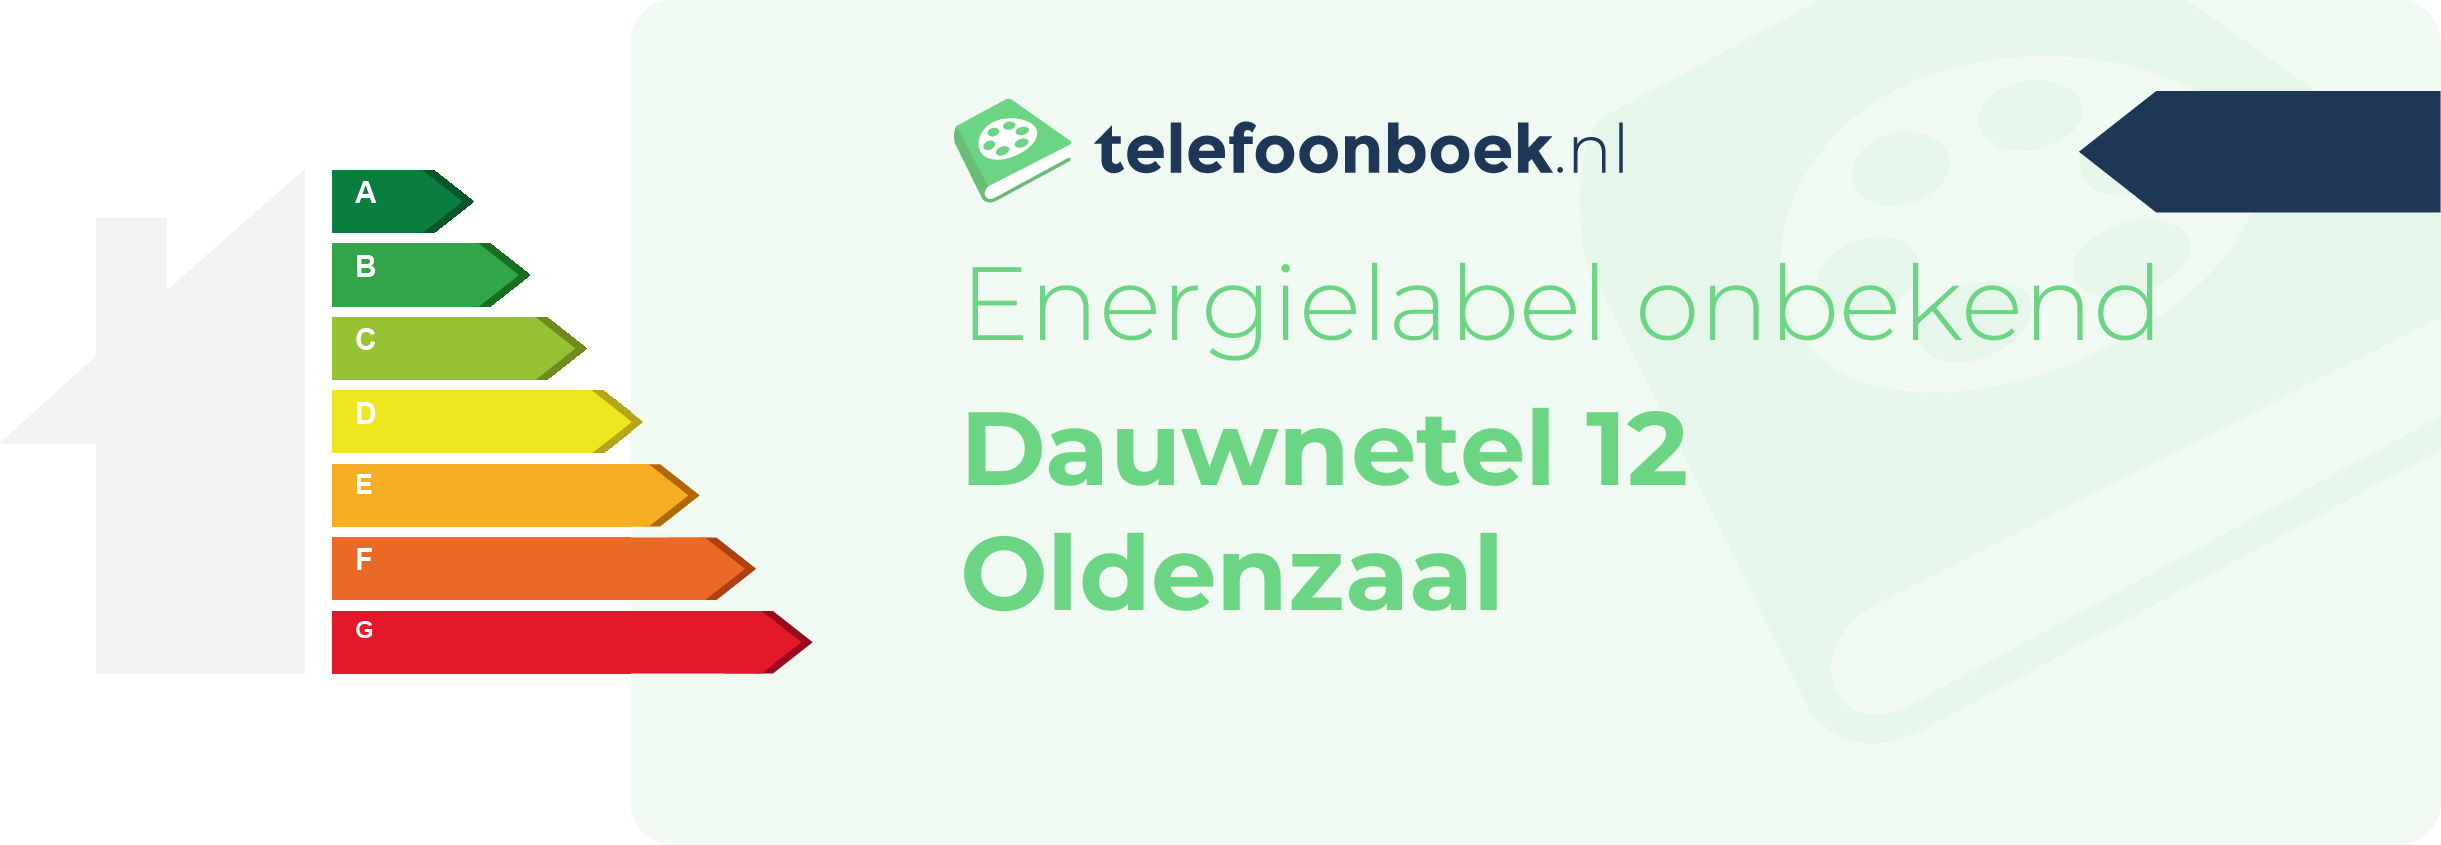 Energielabel Dauwnetel 12 Oldenzaal